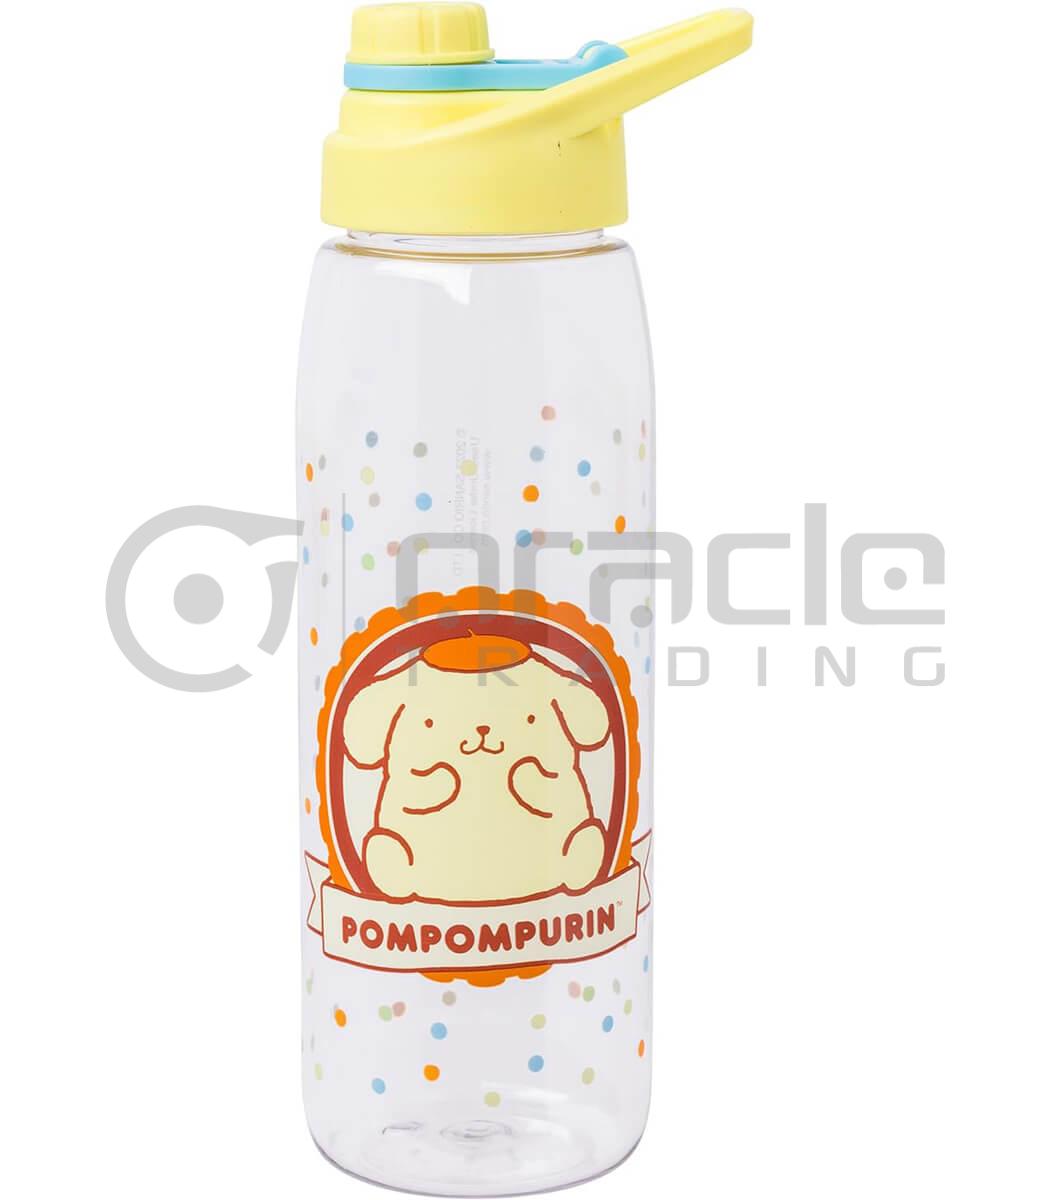 Sanrio Pompompurin Water Bottle